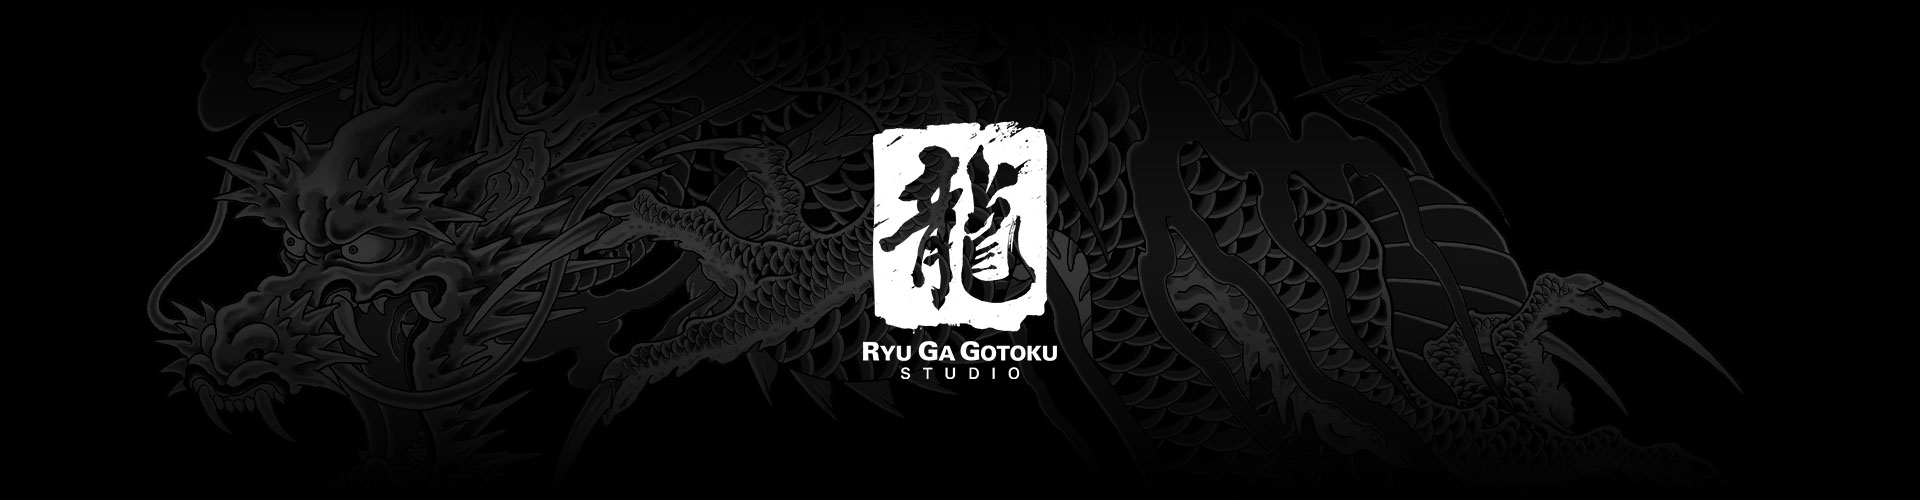 Ryu Ga Gotoku Studio-logo med en grå baggrund med en dragetatovering.